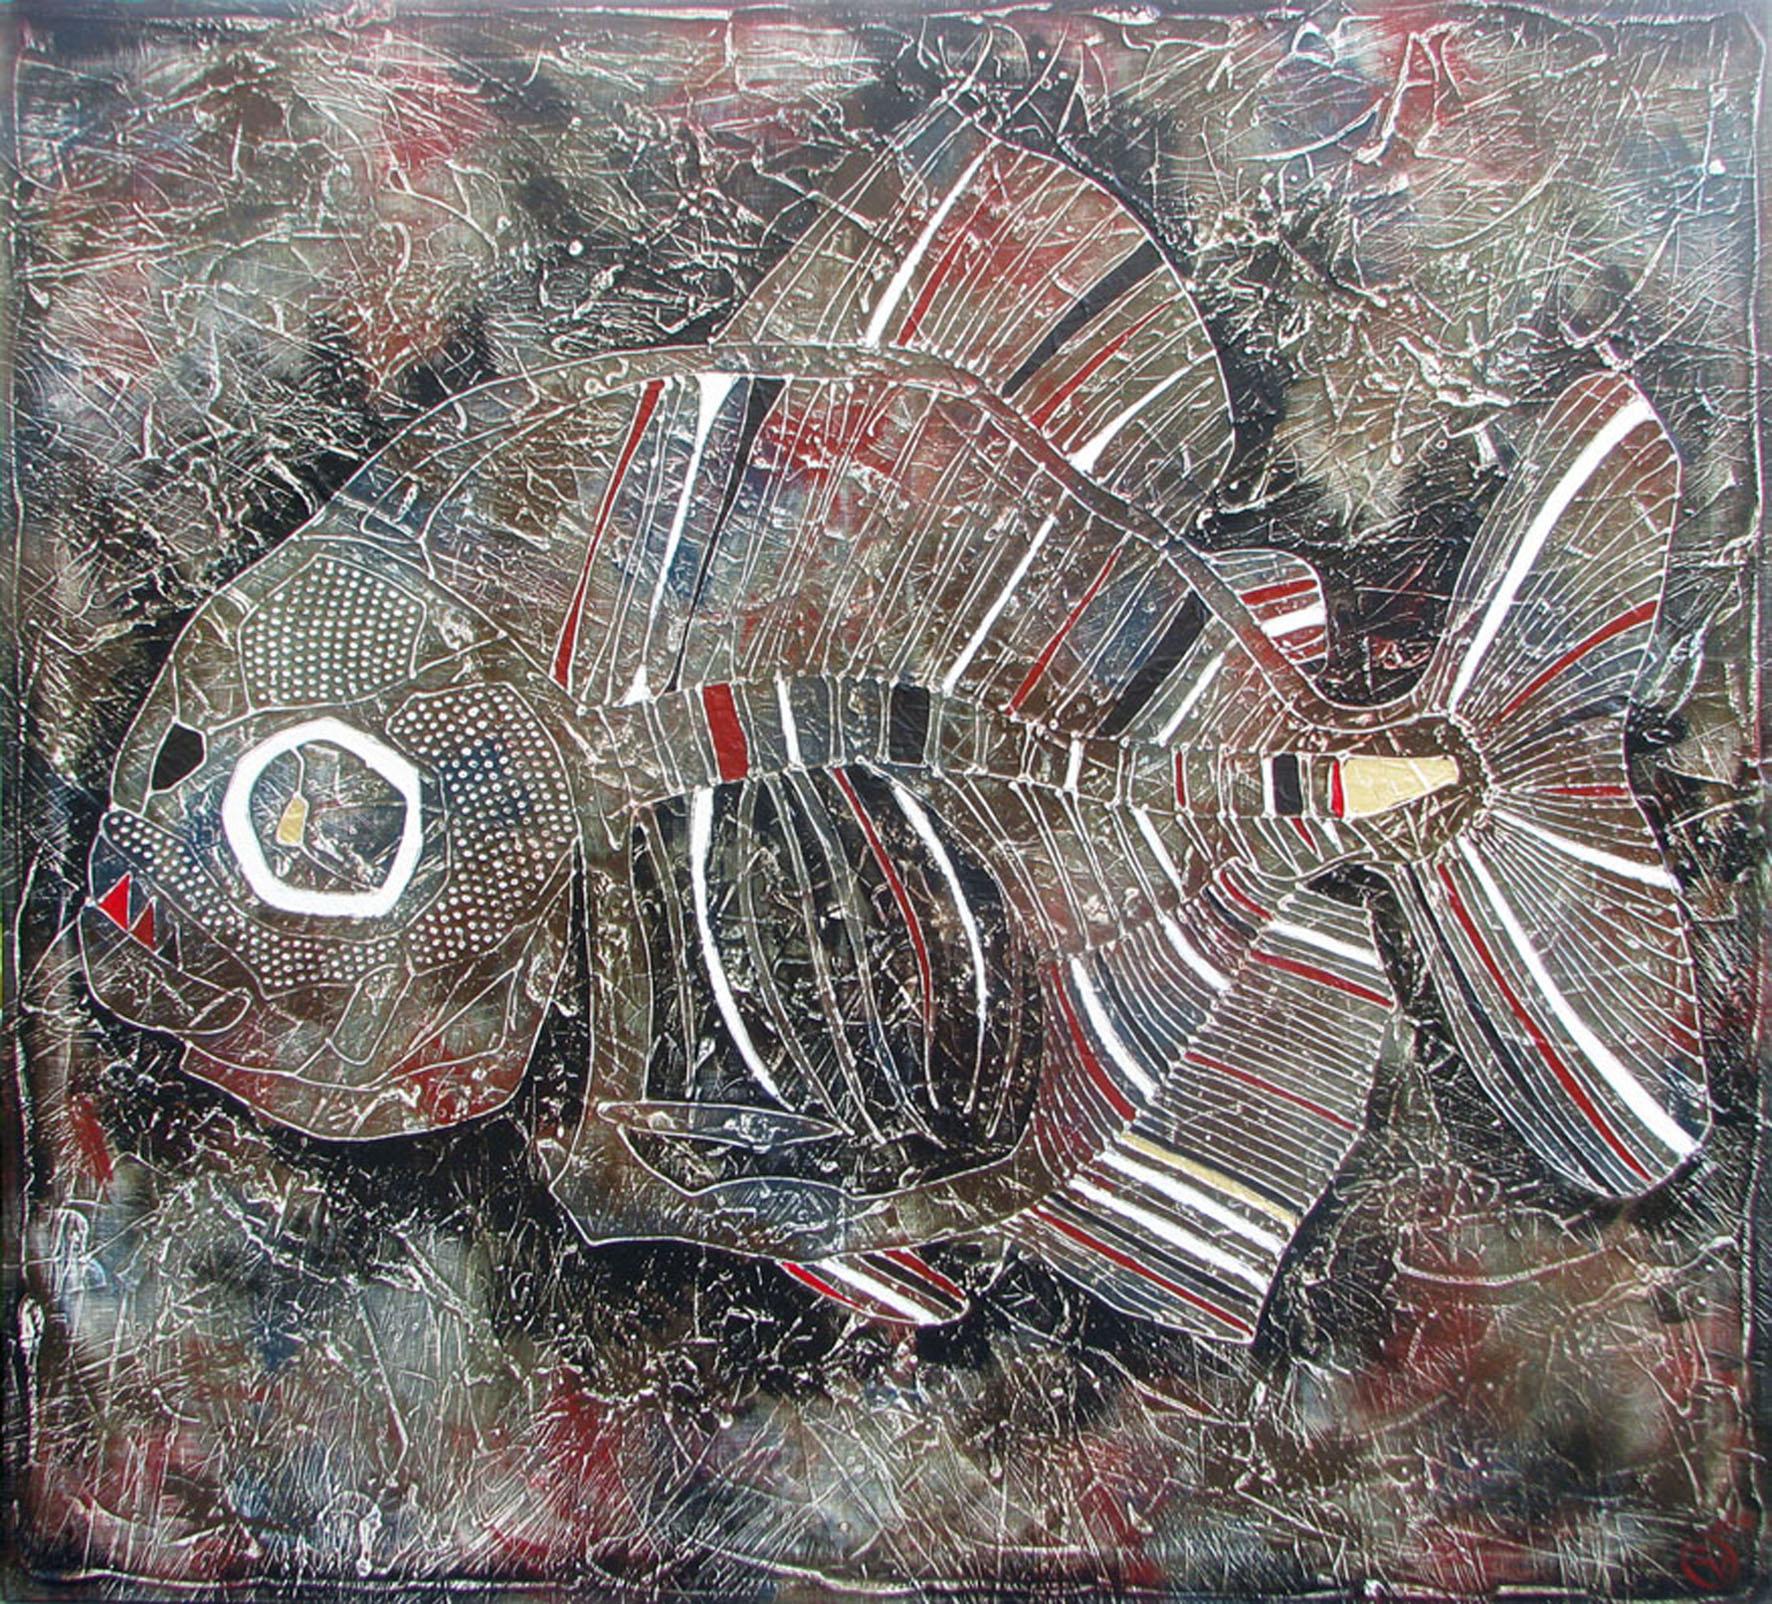 Dieses Kunstwerk ist Teil des Projekts REFLEXUS.

Die Farbe wird in der Technik des Autors der Malerei von Vasily Zianko basierte Acrylmalerei auf Leinwand mit einer Vielzahl von Texturen, Wäschen, die feinste Lasur, volumetrische Konturen gemacht.